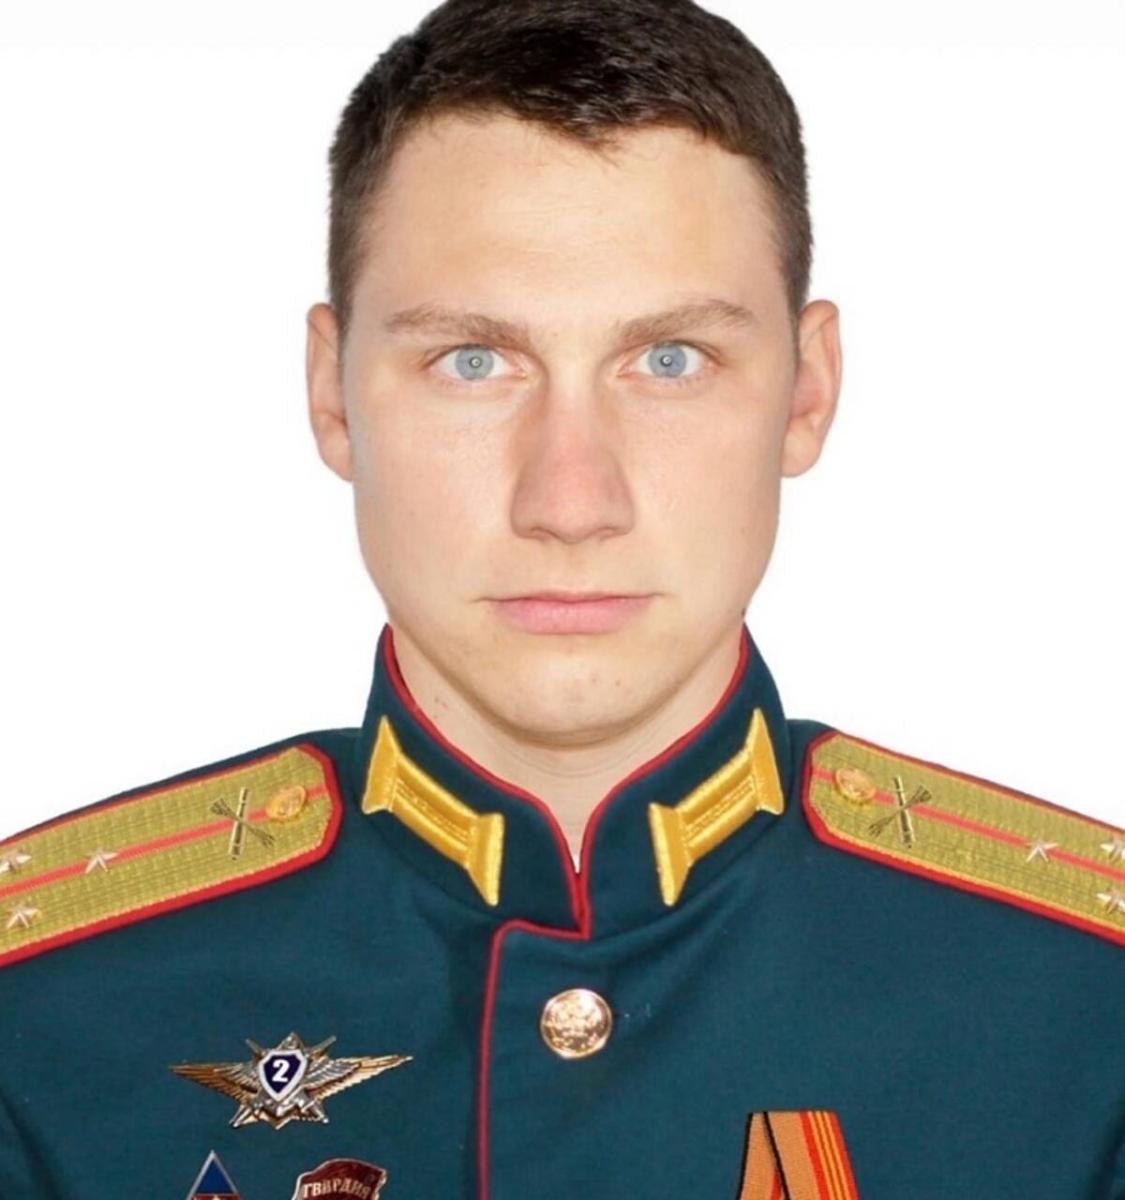 Жителям Брянской области рассказали о ратном подвиге старшего лейтенанта Виталия Гулева из города Клинцы